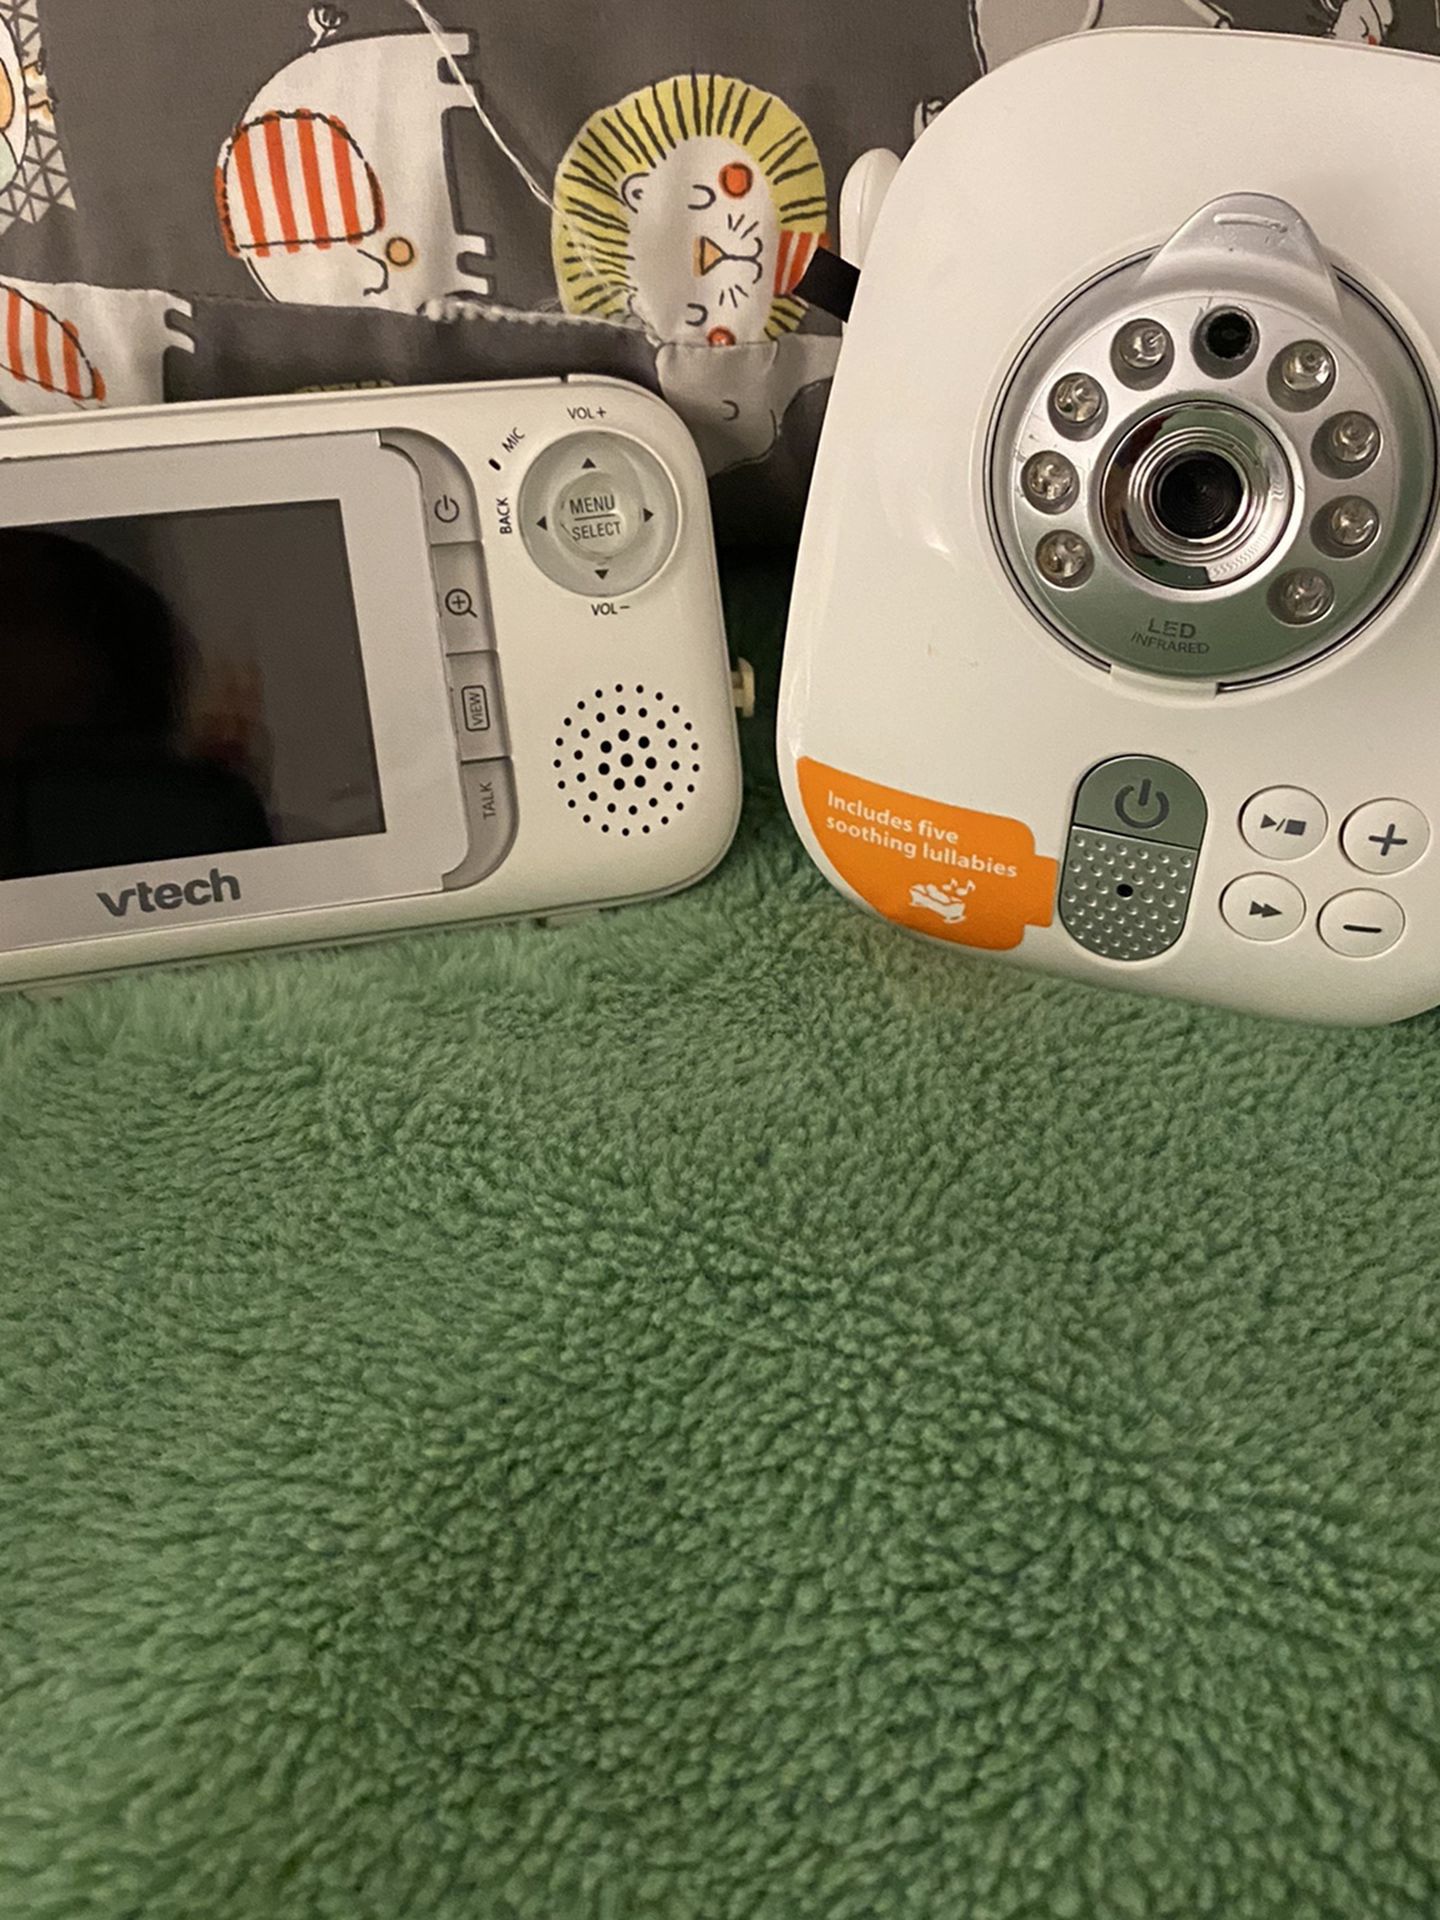 Vtech Baby Camera And Monitor